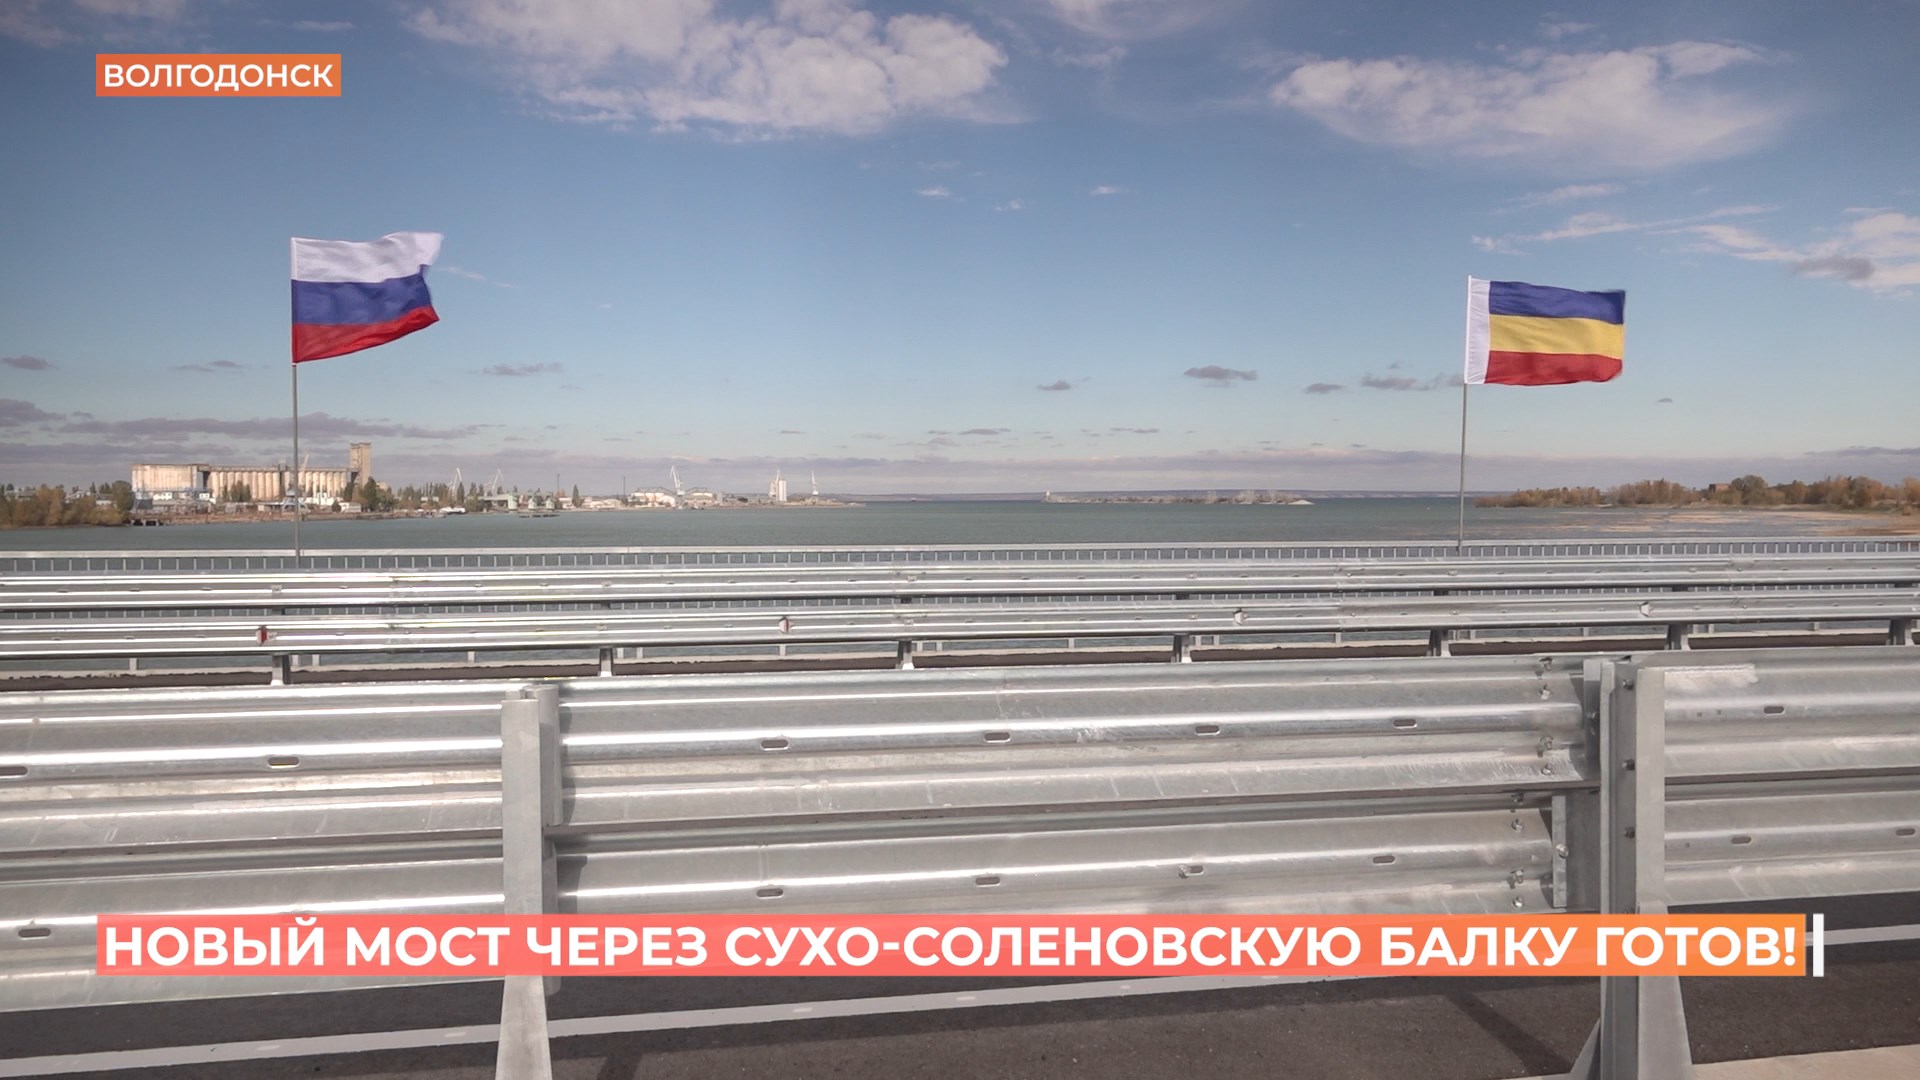 Автомобильное движение по новому мосту через Сухо-Солёновскую балку в Волгодонске запущено